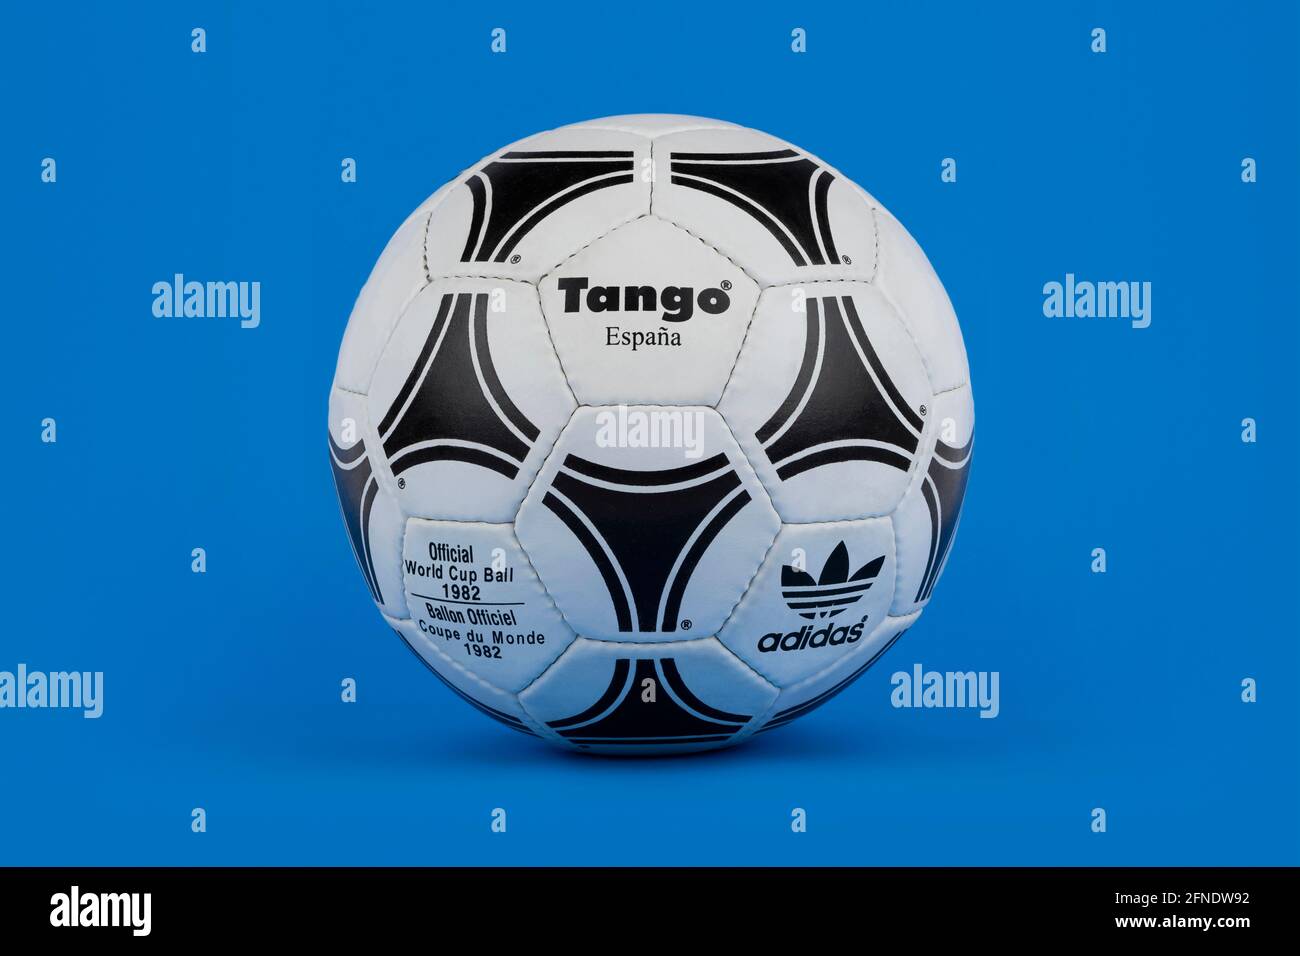 Un ballon de football Adidas Tango Espana sorti pour la coupe du monde de la FIFA 1982, tourné sur fond bleu. Banque D'Images